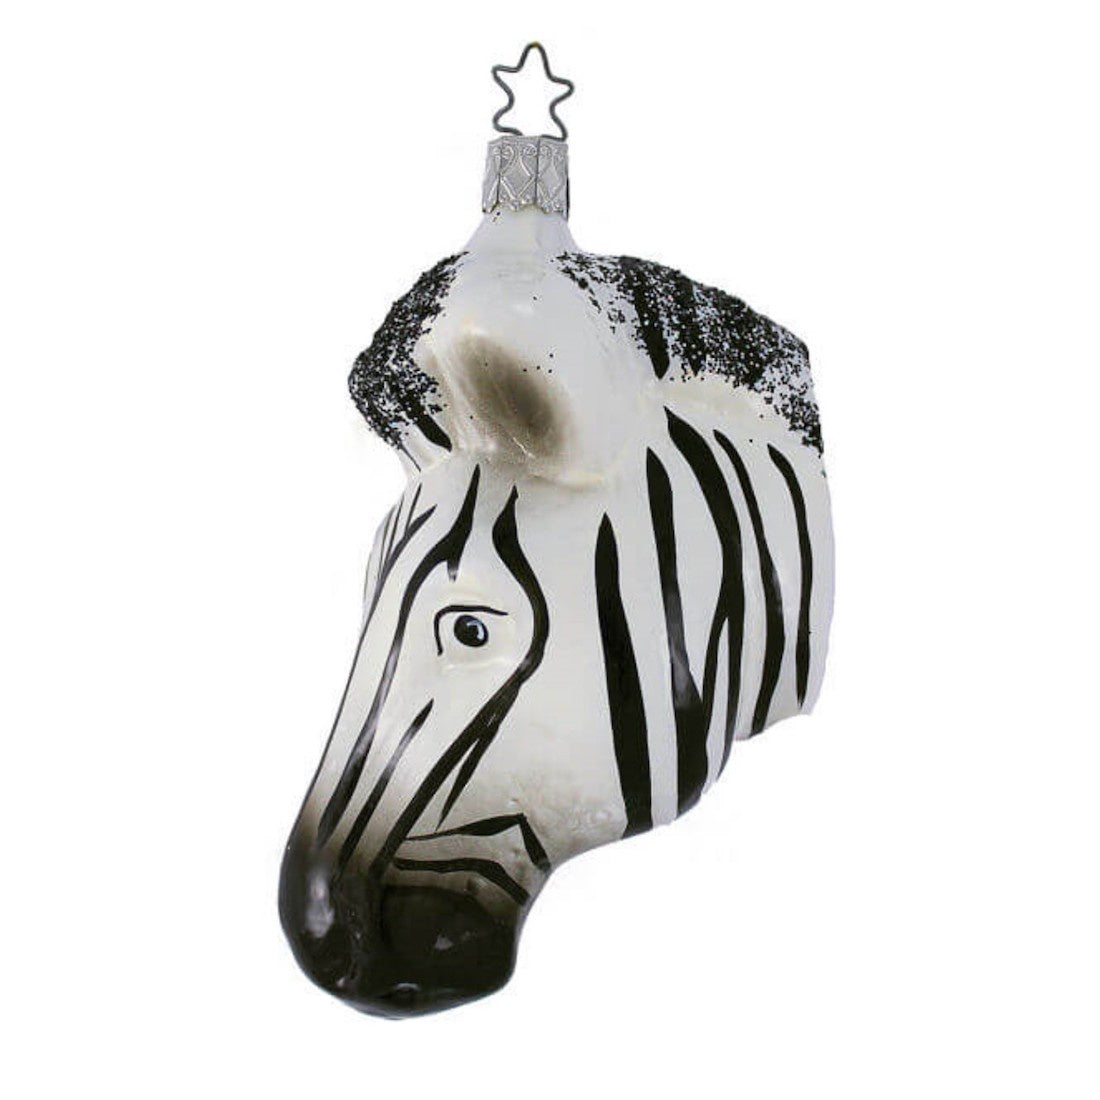 Stripes, Zebra Head by Inge Glas of Germany